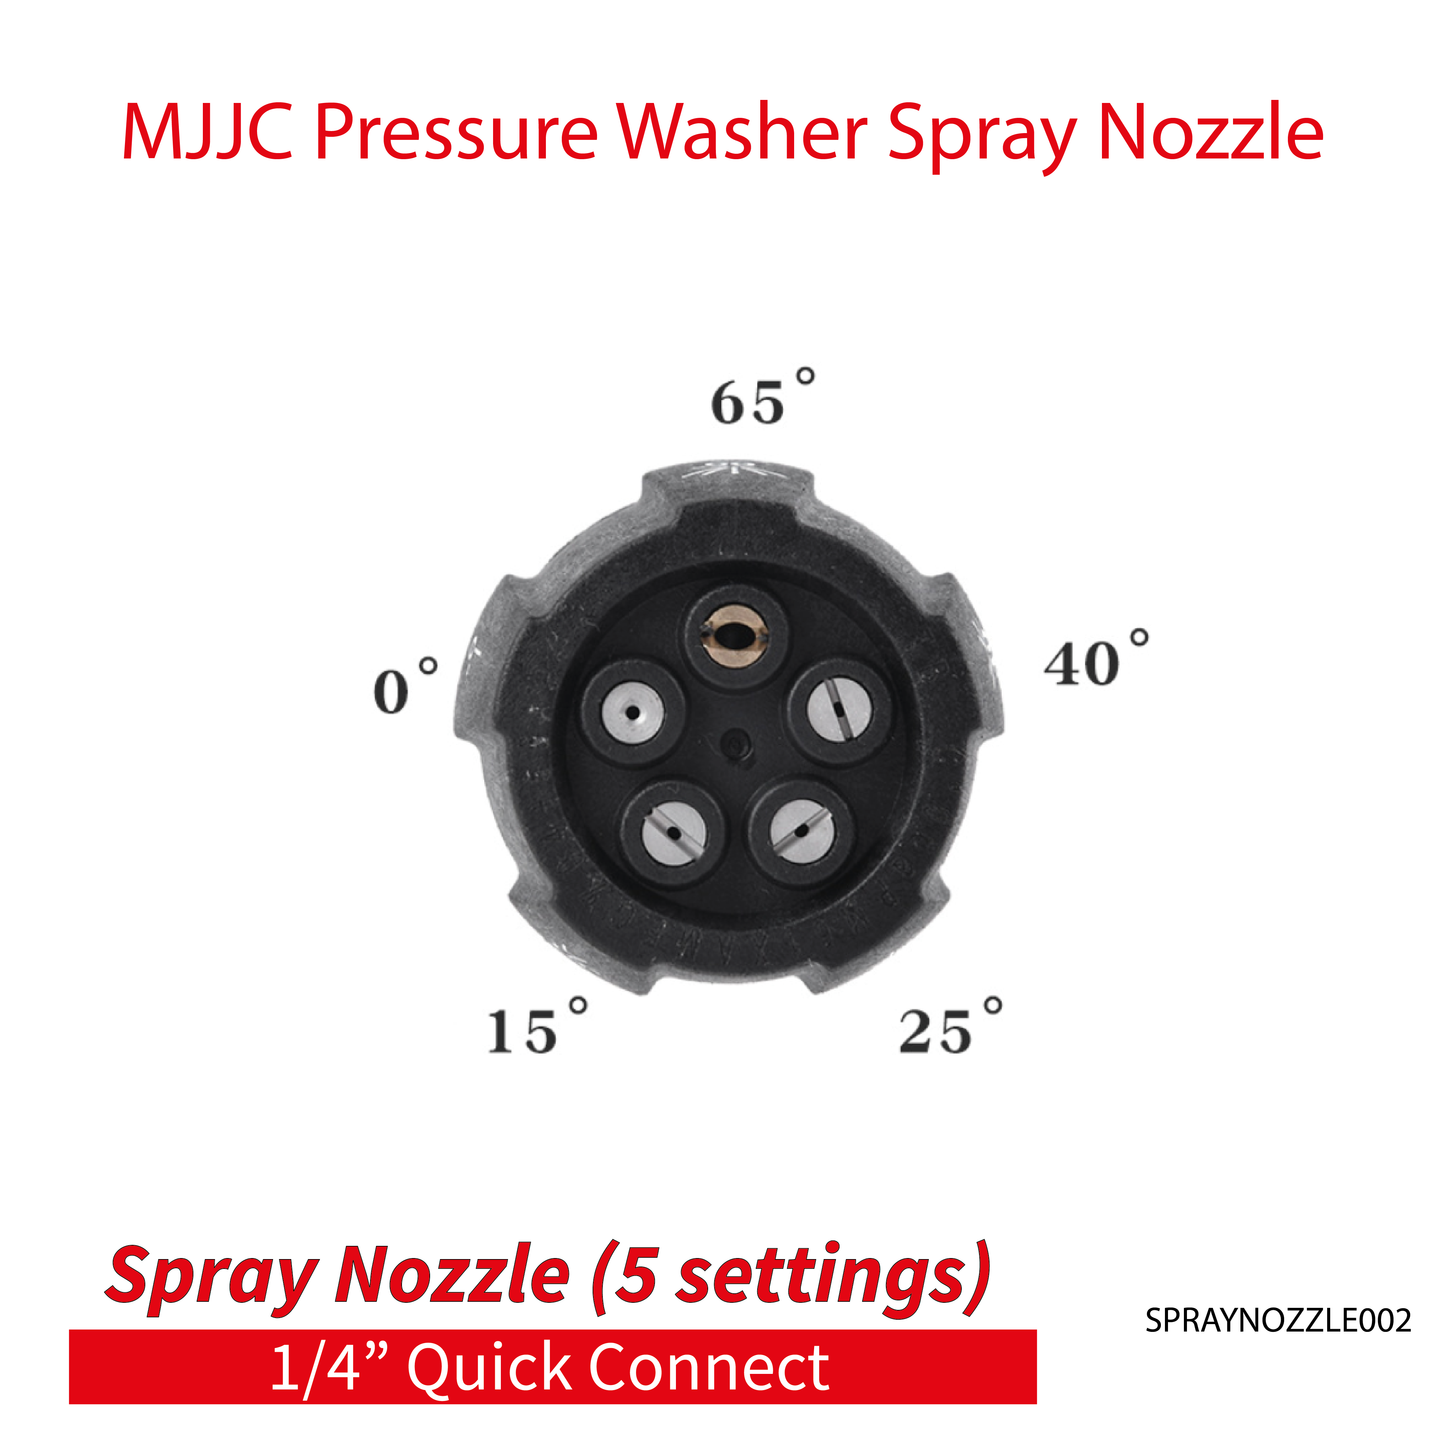 MJJC Pressure Washer (5 in 1) Spray Nozzle - 1/4" Quick Connect